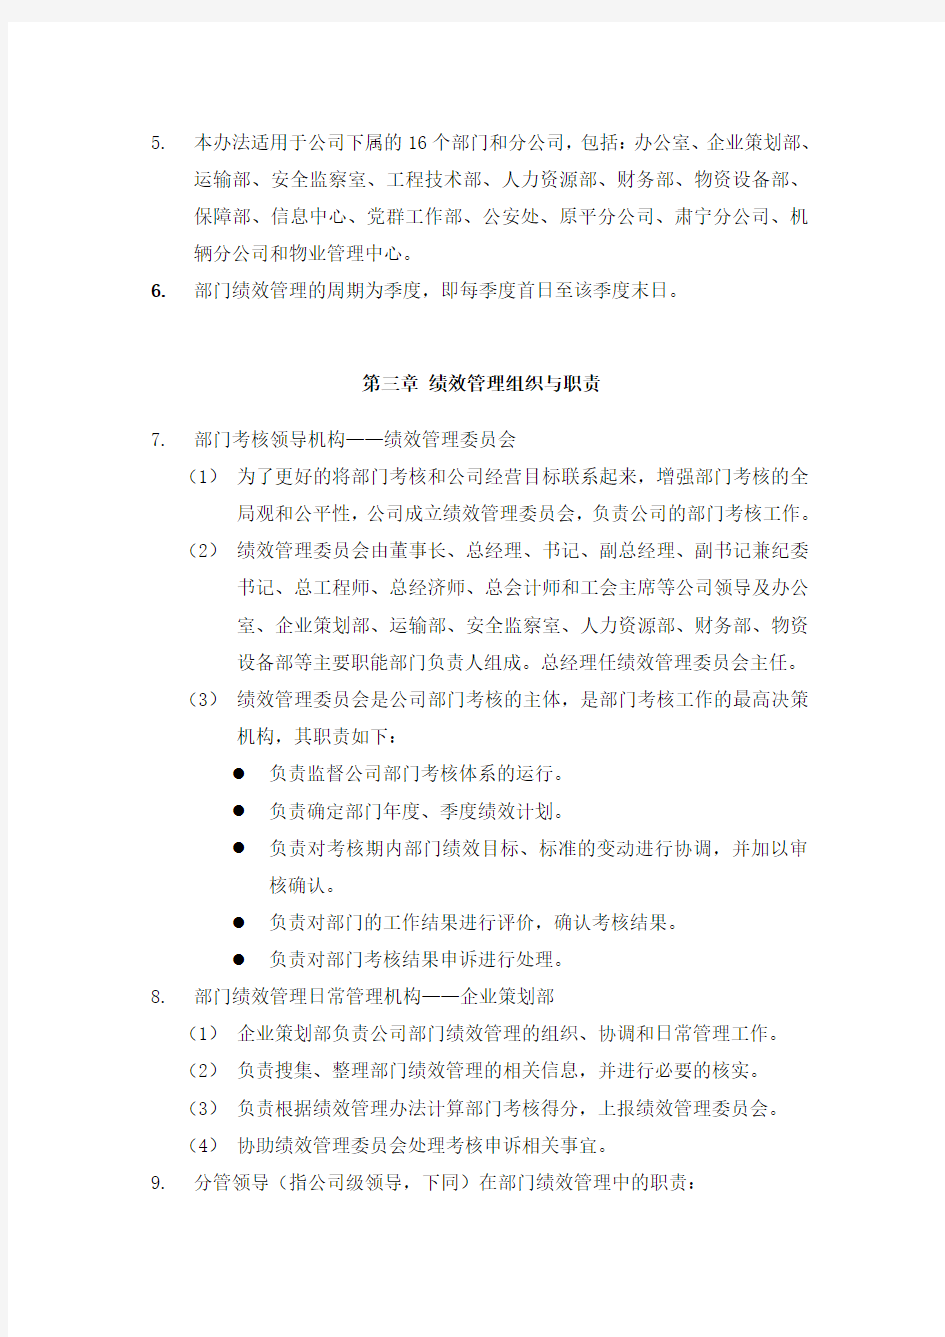 (002)朴智—神华朔黄铁路公司—部门绩效考核管理办法0815